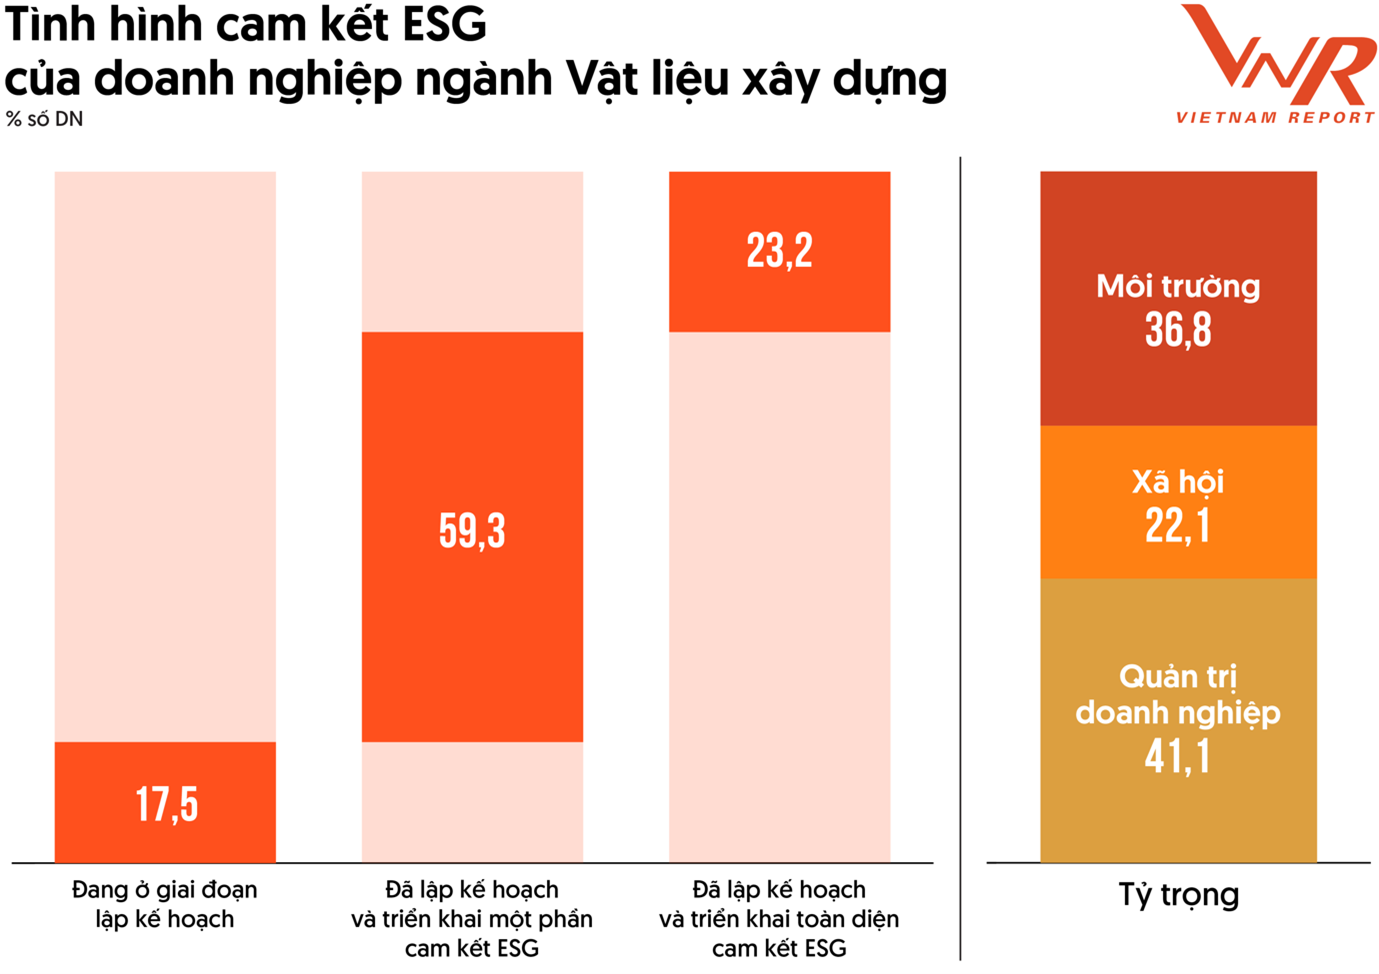 Thách thức lớn nhất hiện nay đó là Việt Nam chưa có khung hành lang pháp lý về xây dựng cơ chế định giá carbon